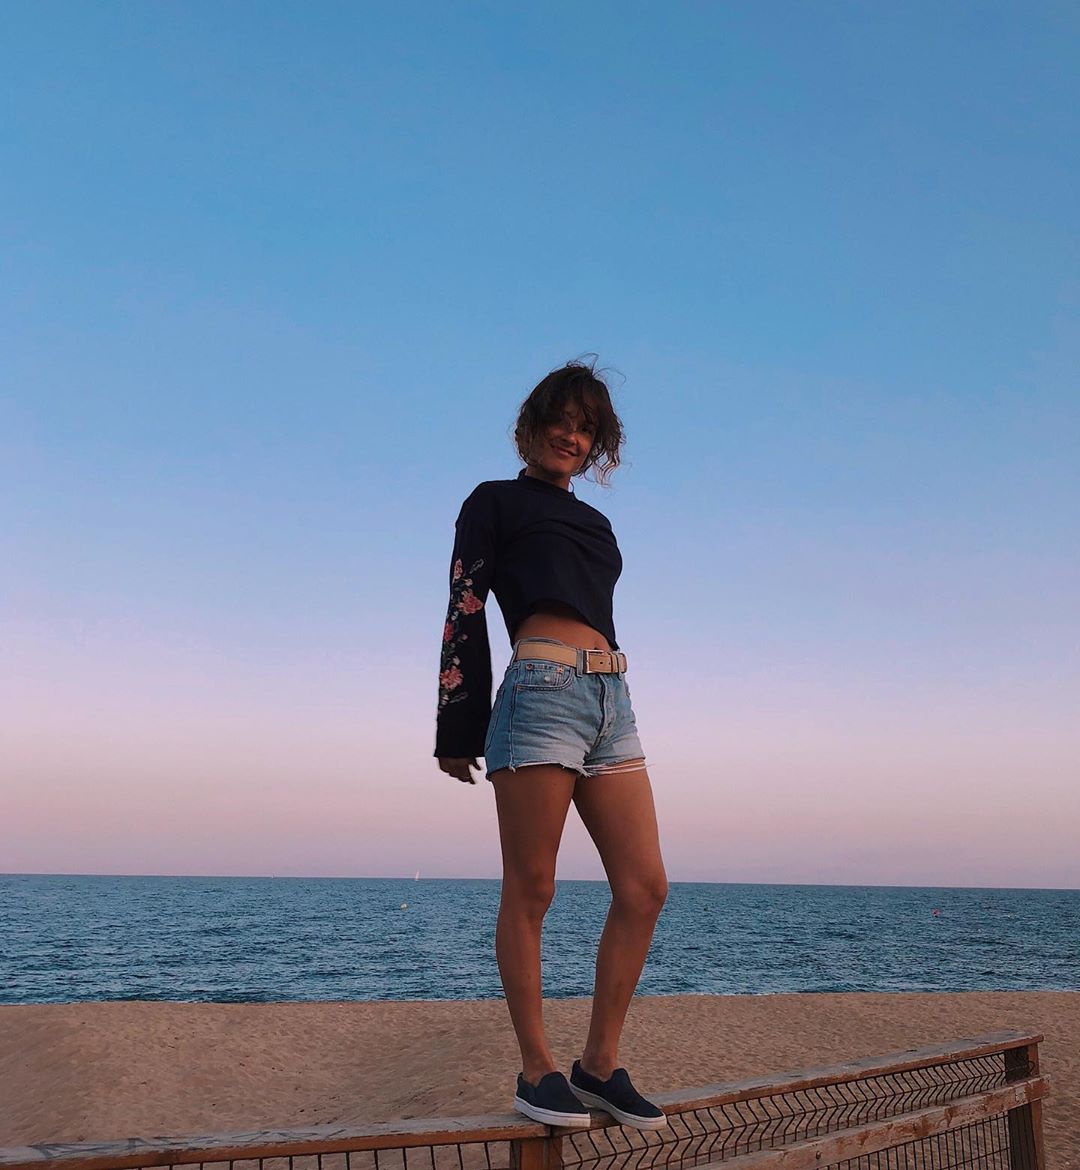 Валерия Демидова позирует на пляже в черной кофте, джинсовых шортах и кроссовках